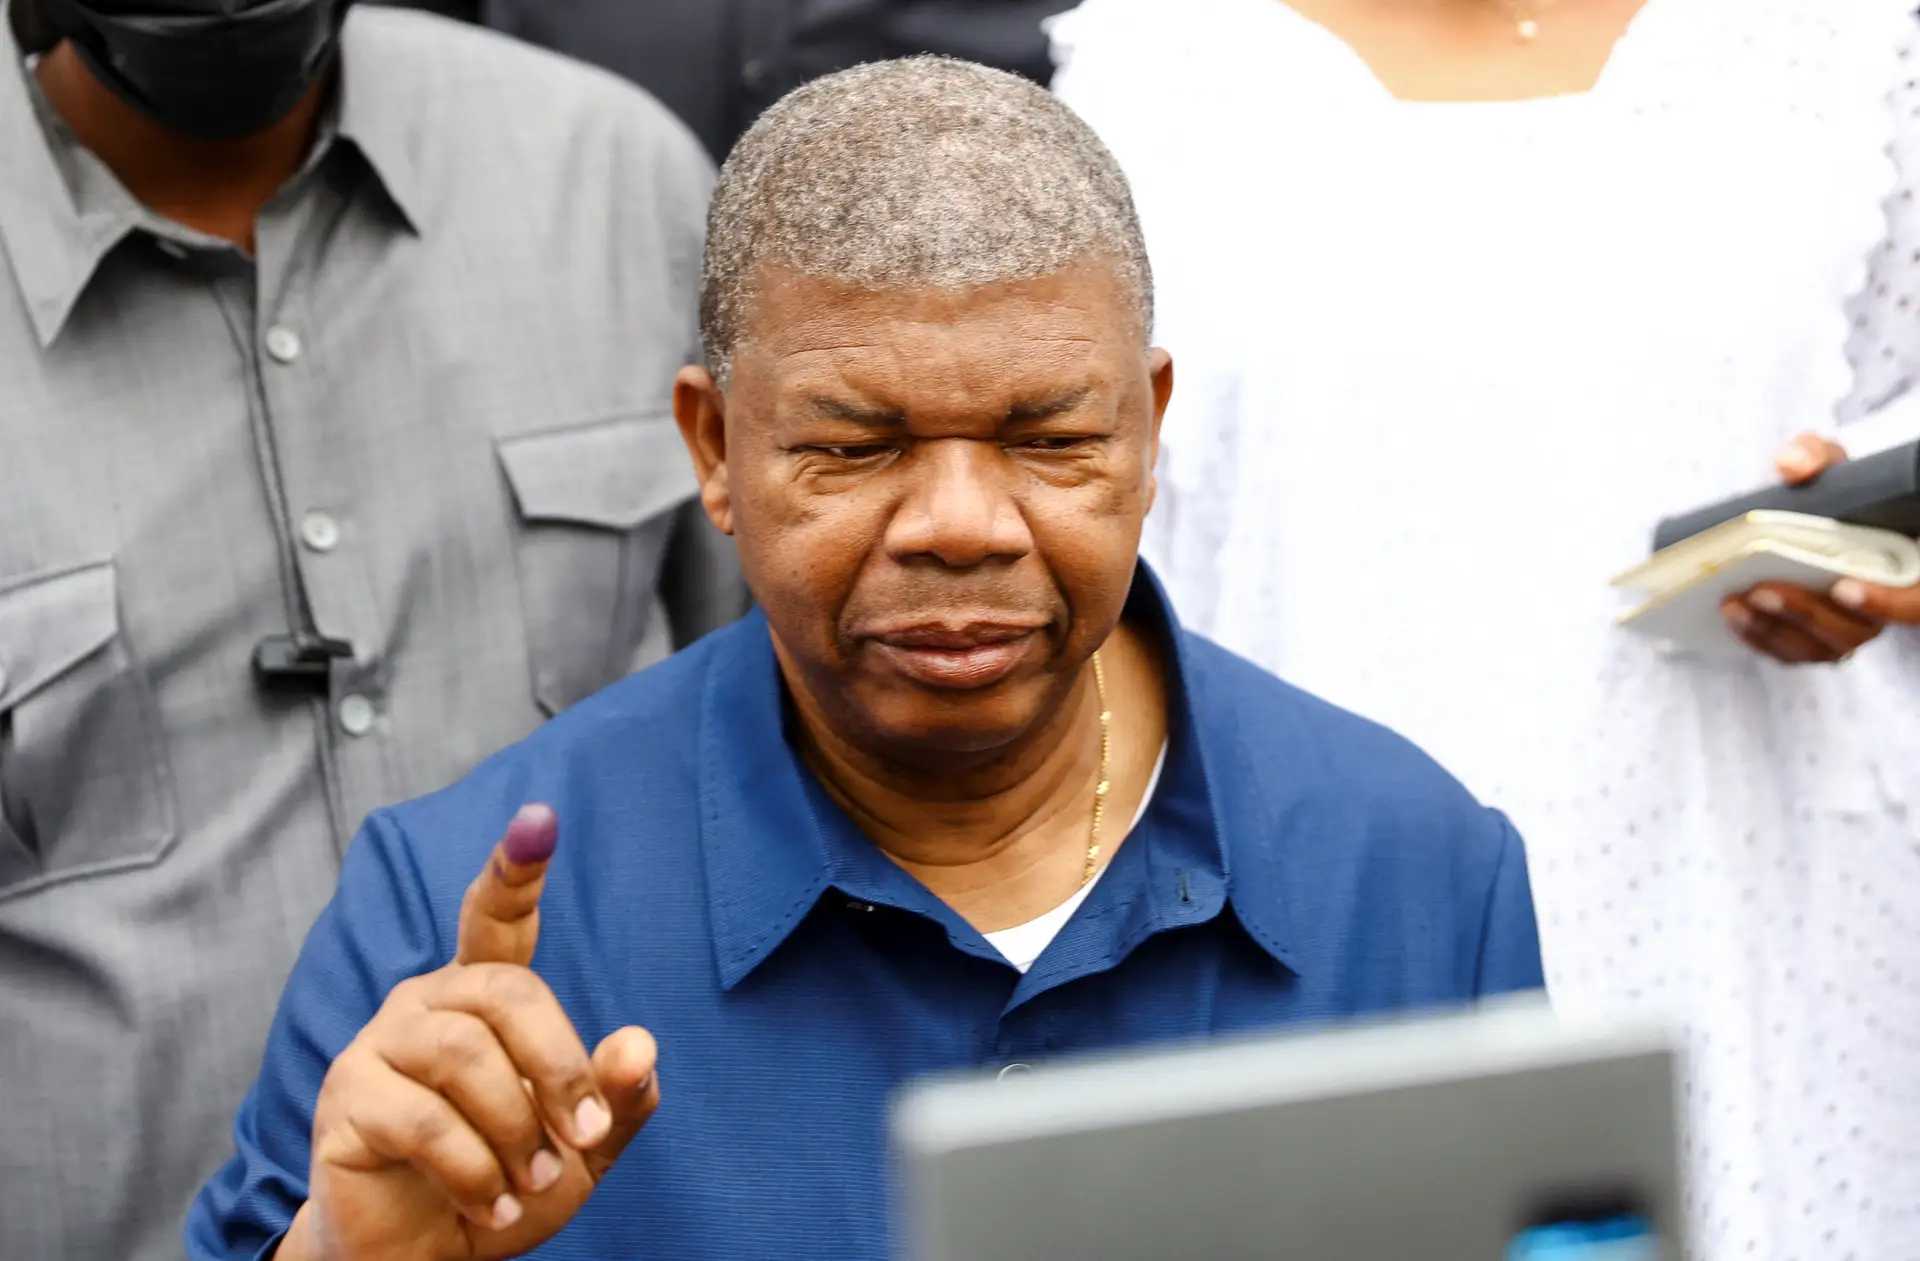 Eleições em Angola: resultados provisórios dão vitória ao MPLA